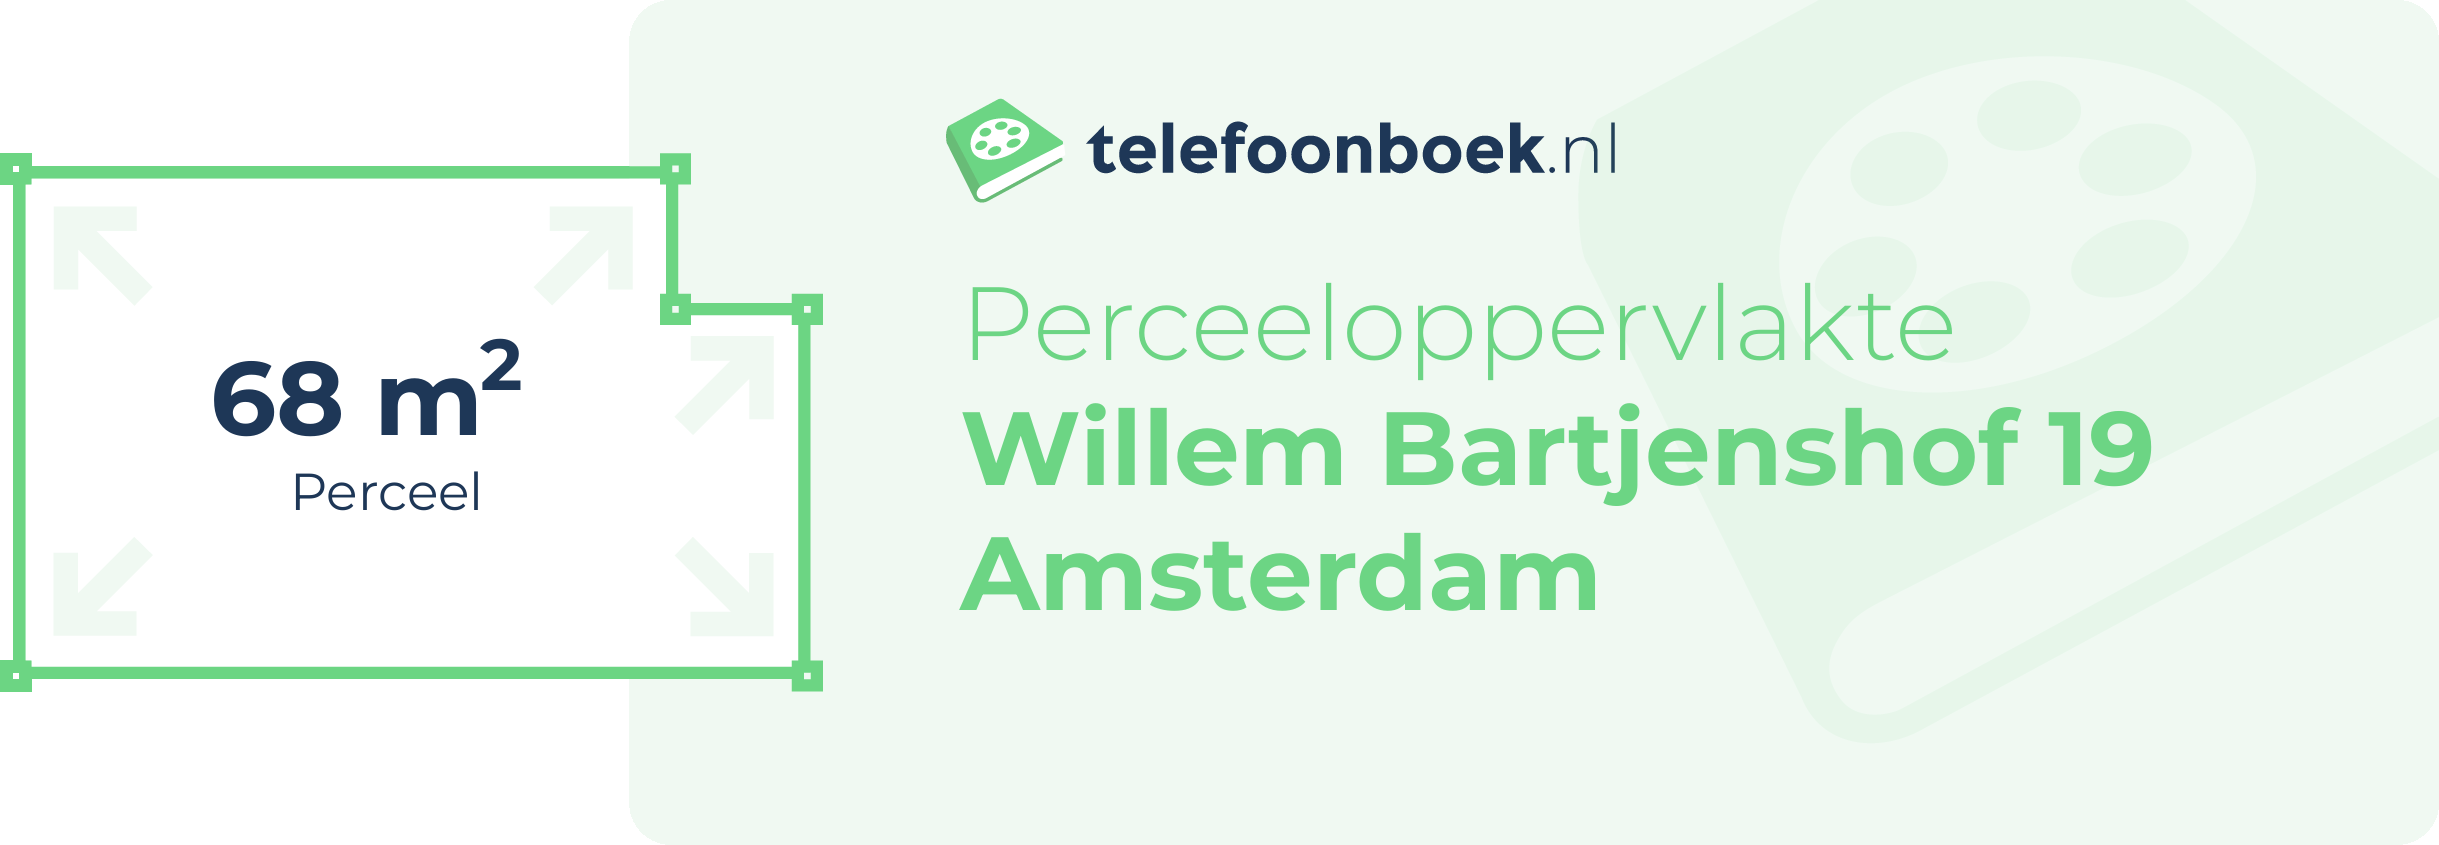 Perceeloppervlakte Willem Bartjenshof 19 Amsterdam